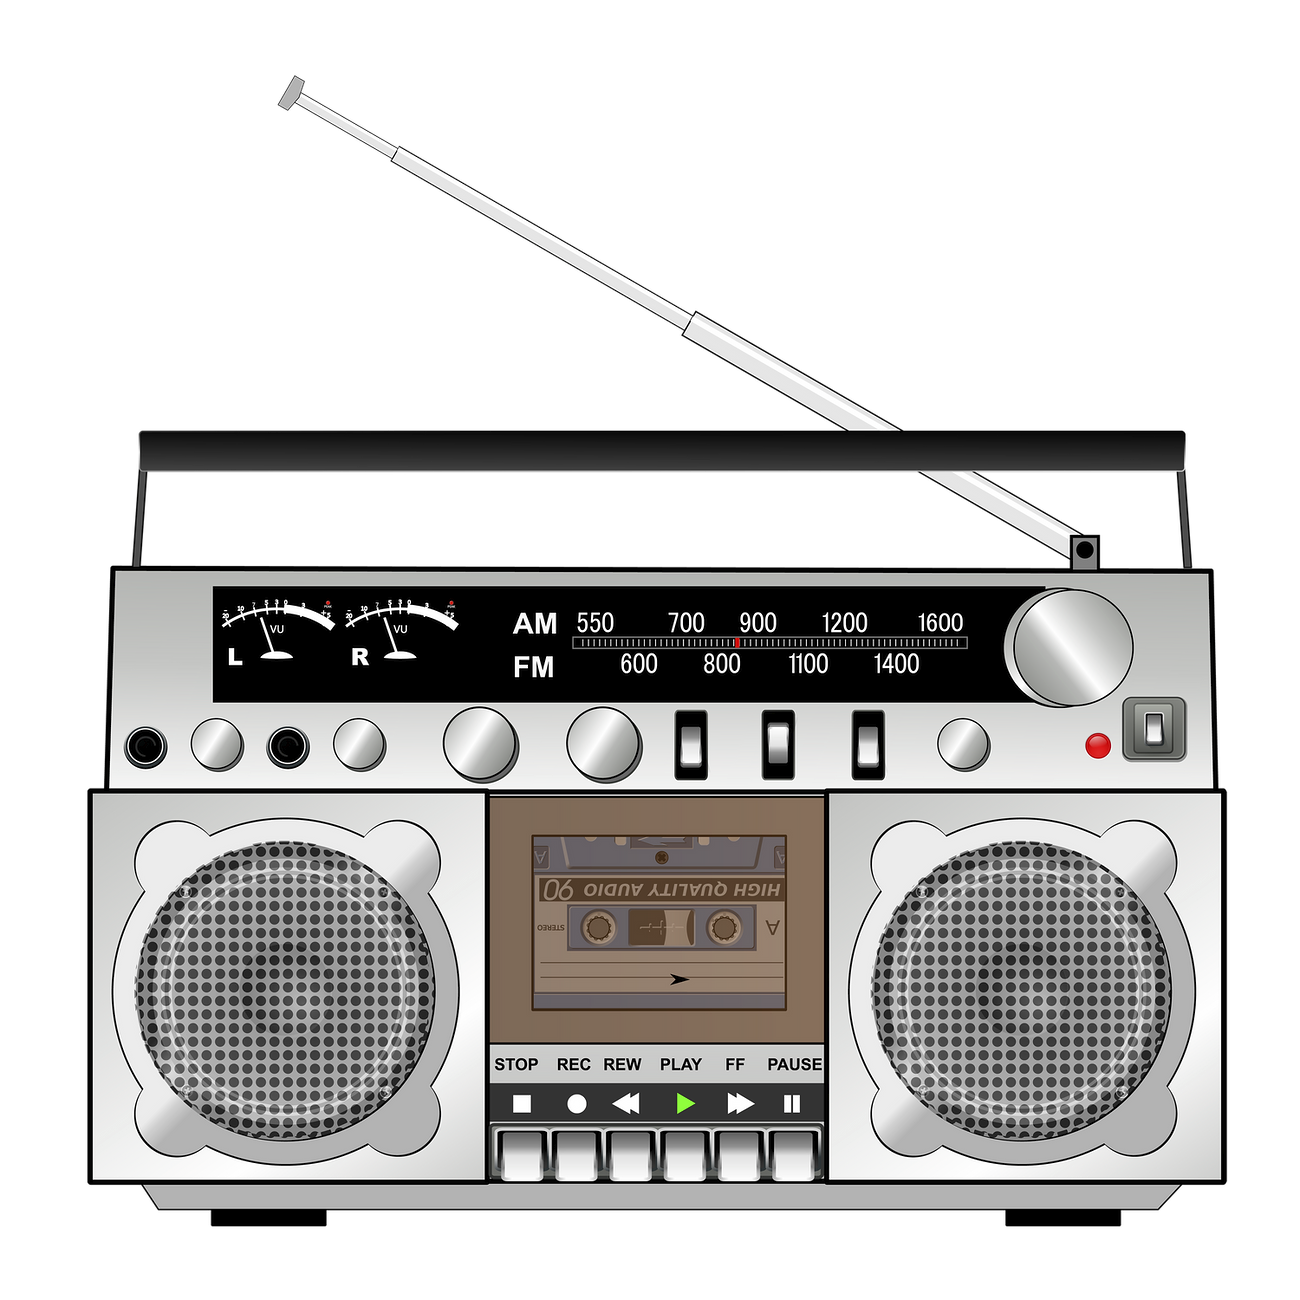 Boombox radio png sticker, music